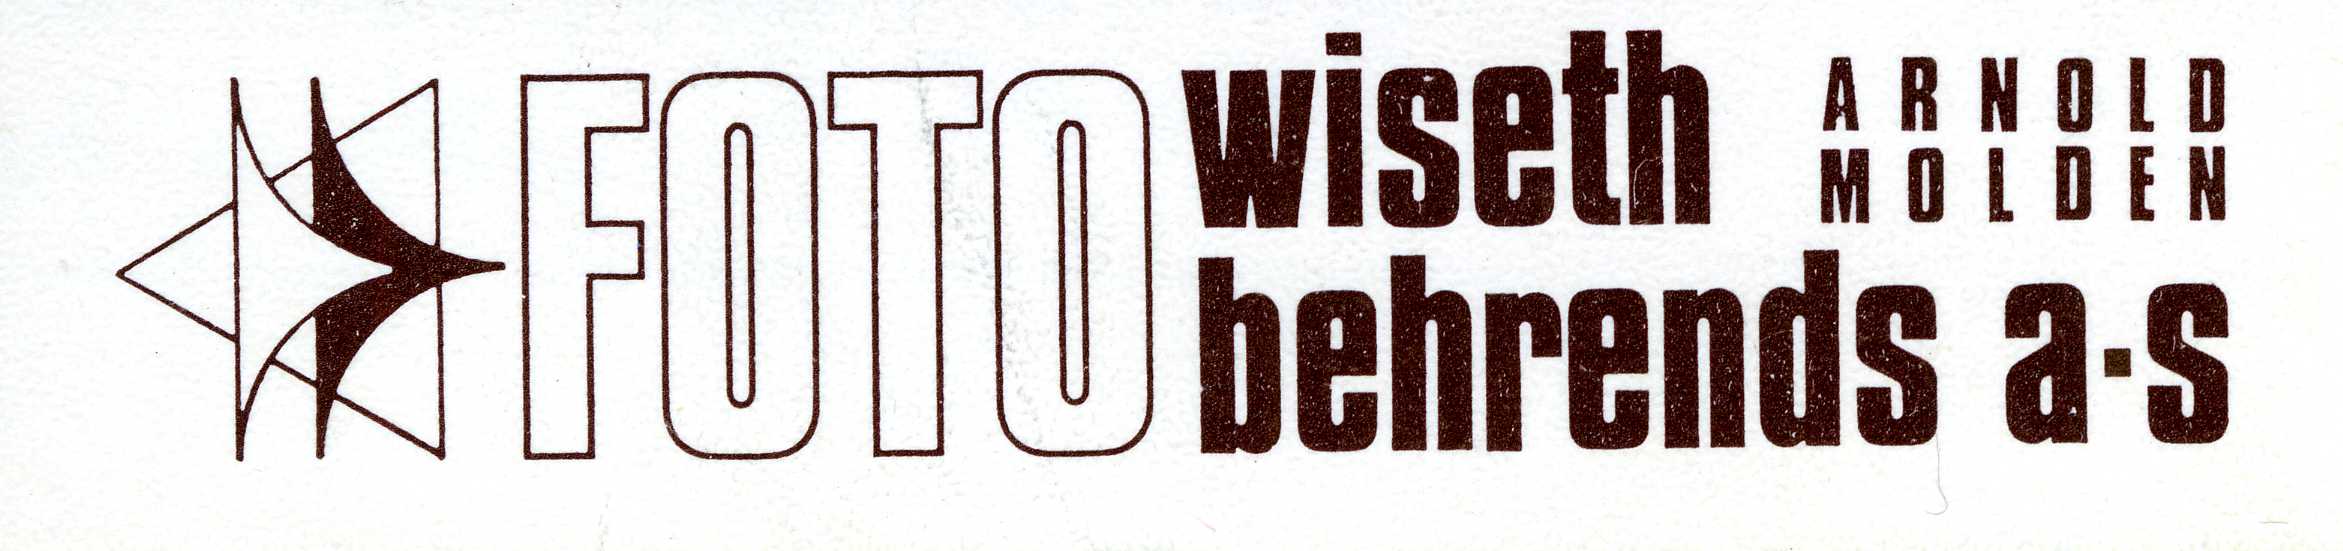 Wiseth Foto Behrends - logo